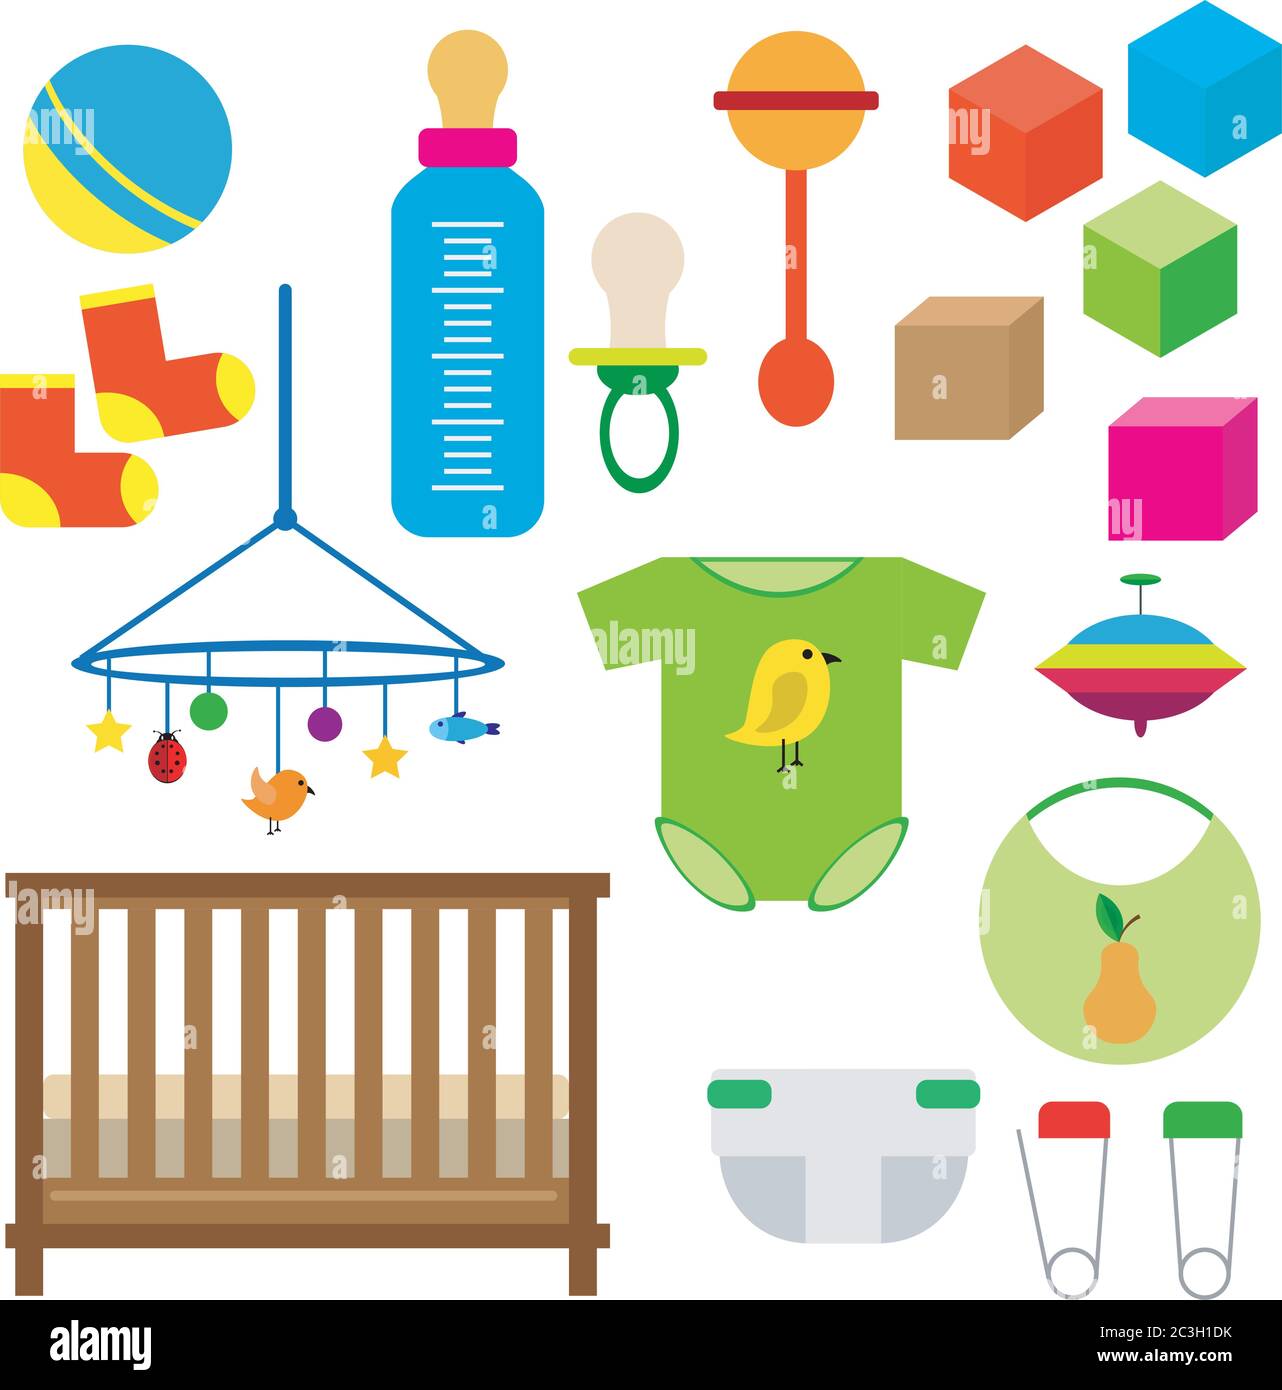 Ensemble pour enfants : jouets, vêtements, couches, lit de bébé avec clôture, cubes. Vecteur défini sur un arrière-plan blanc isolé. Illustration de Vecteur